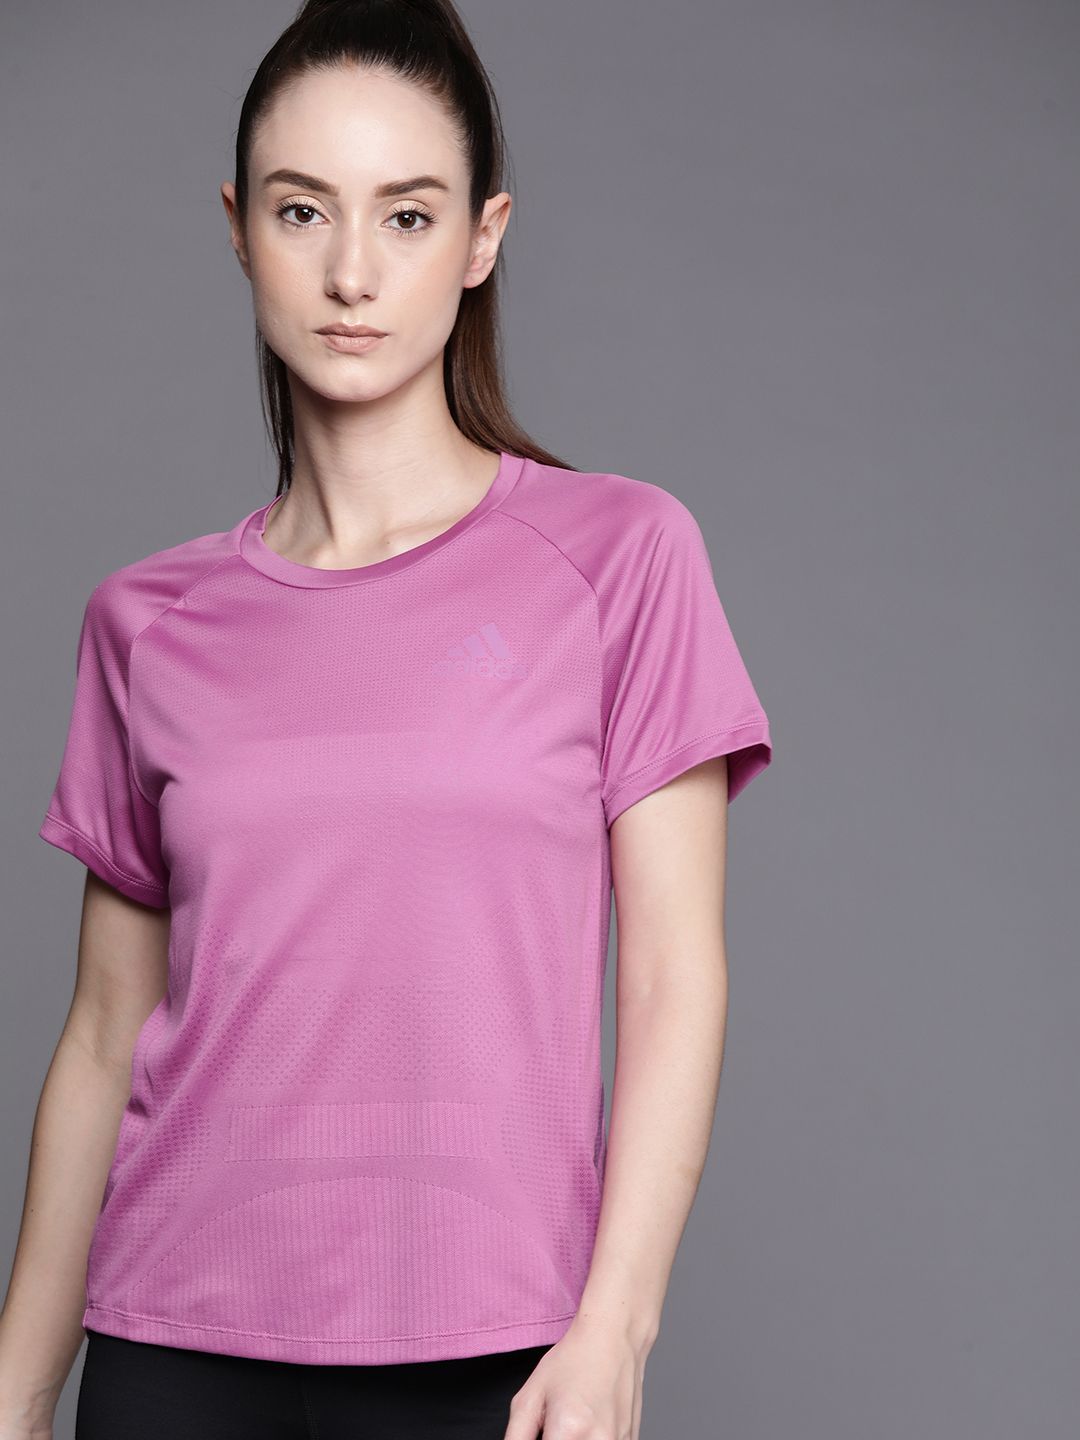 ADIDAS Women Purple Parley Adizero Running Slim Fit T-shirt Price in India